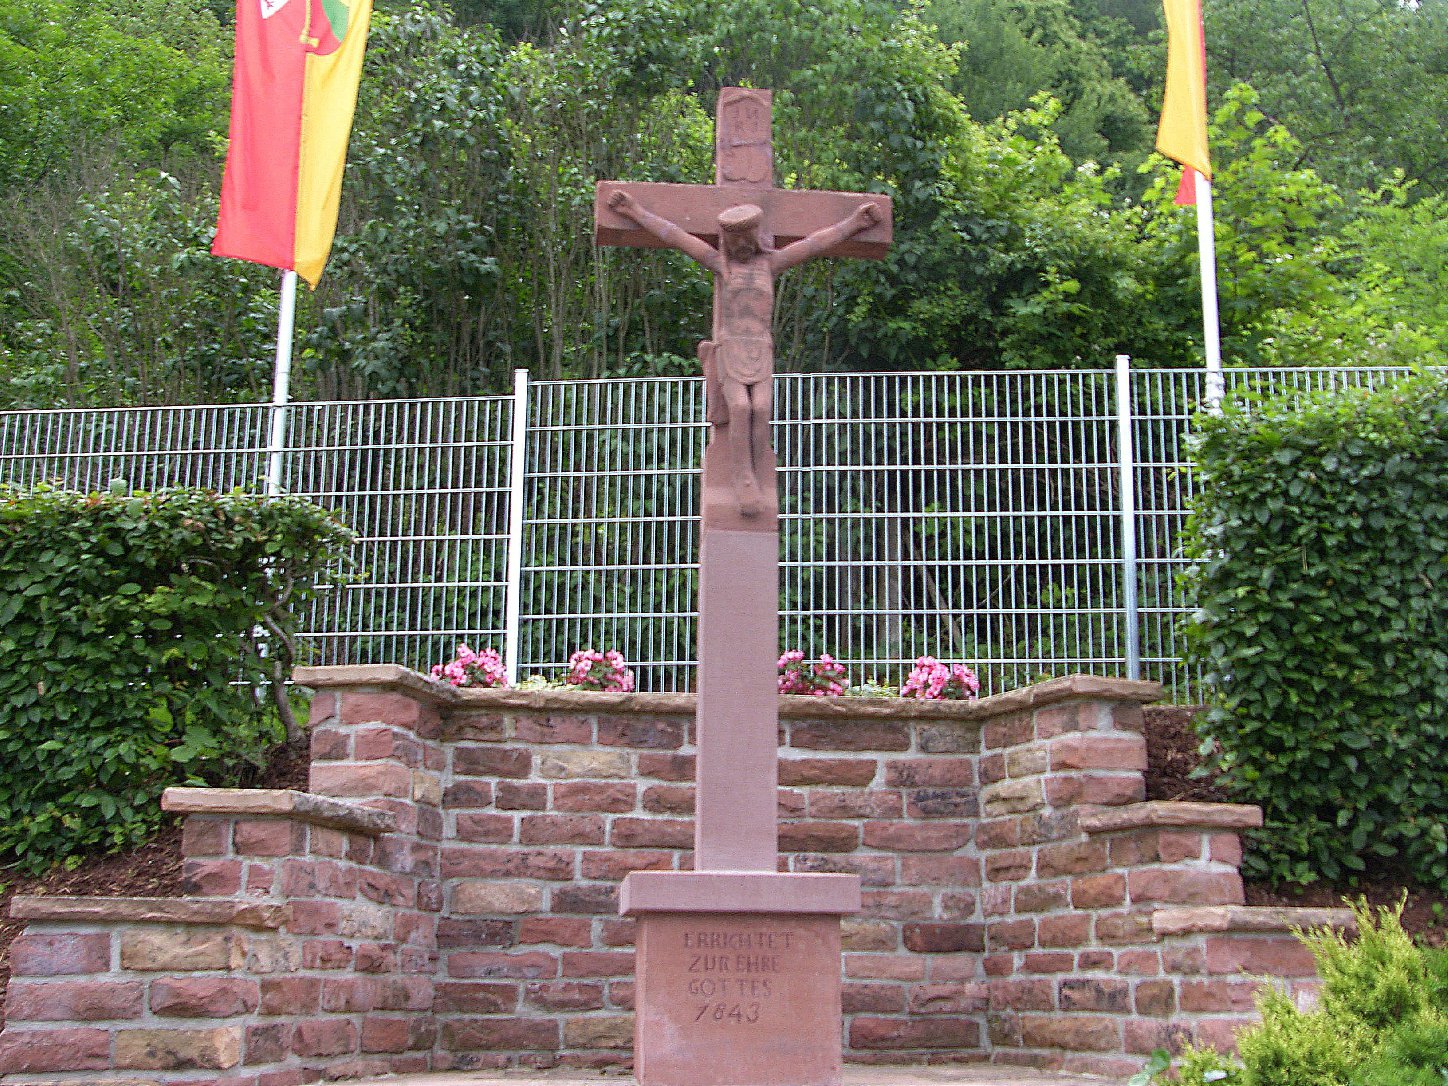 Das restaurierte Sandsteinkreuz und seine neu gestaltete Umgebung. Foto: Pfalz-Express/Ahme